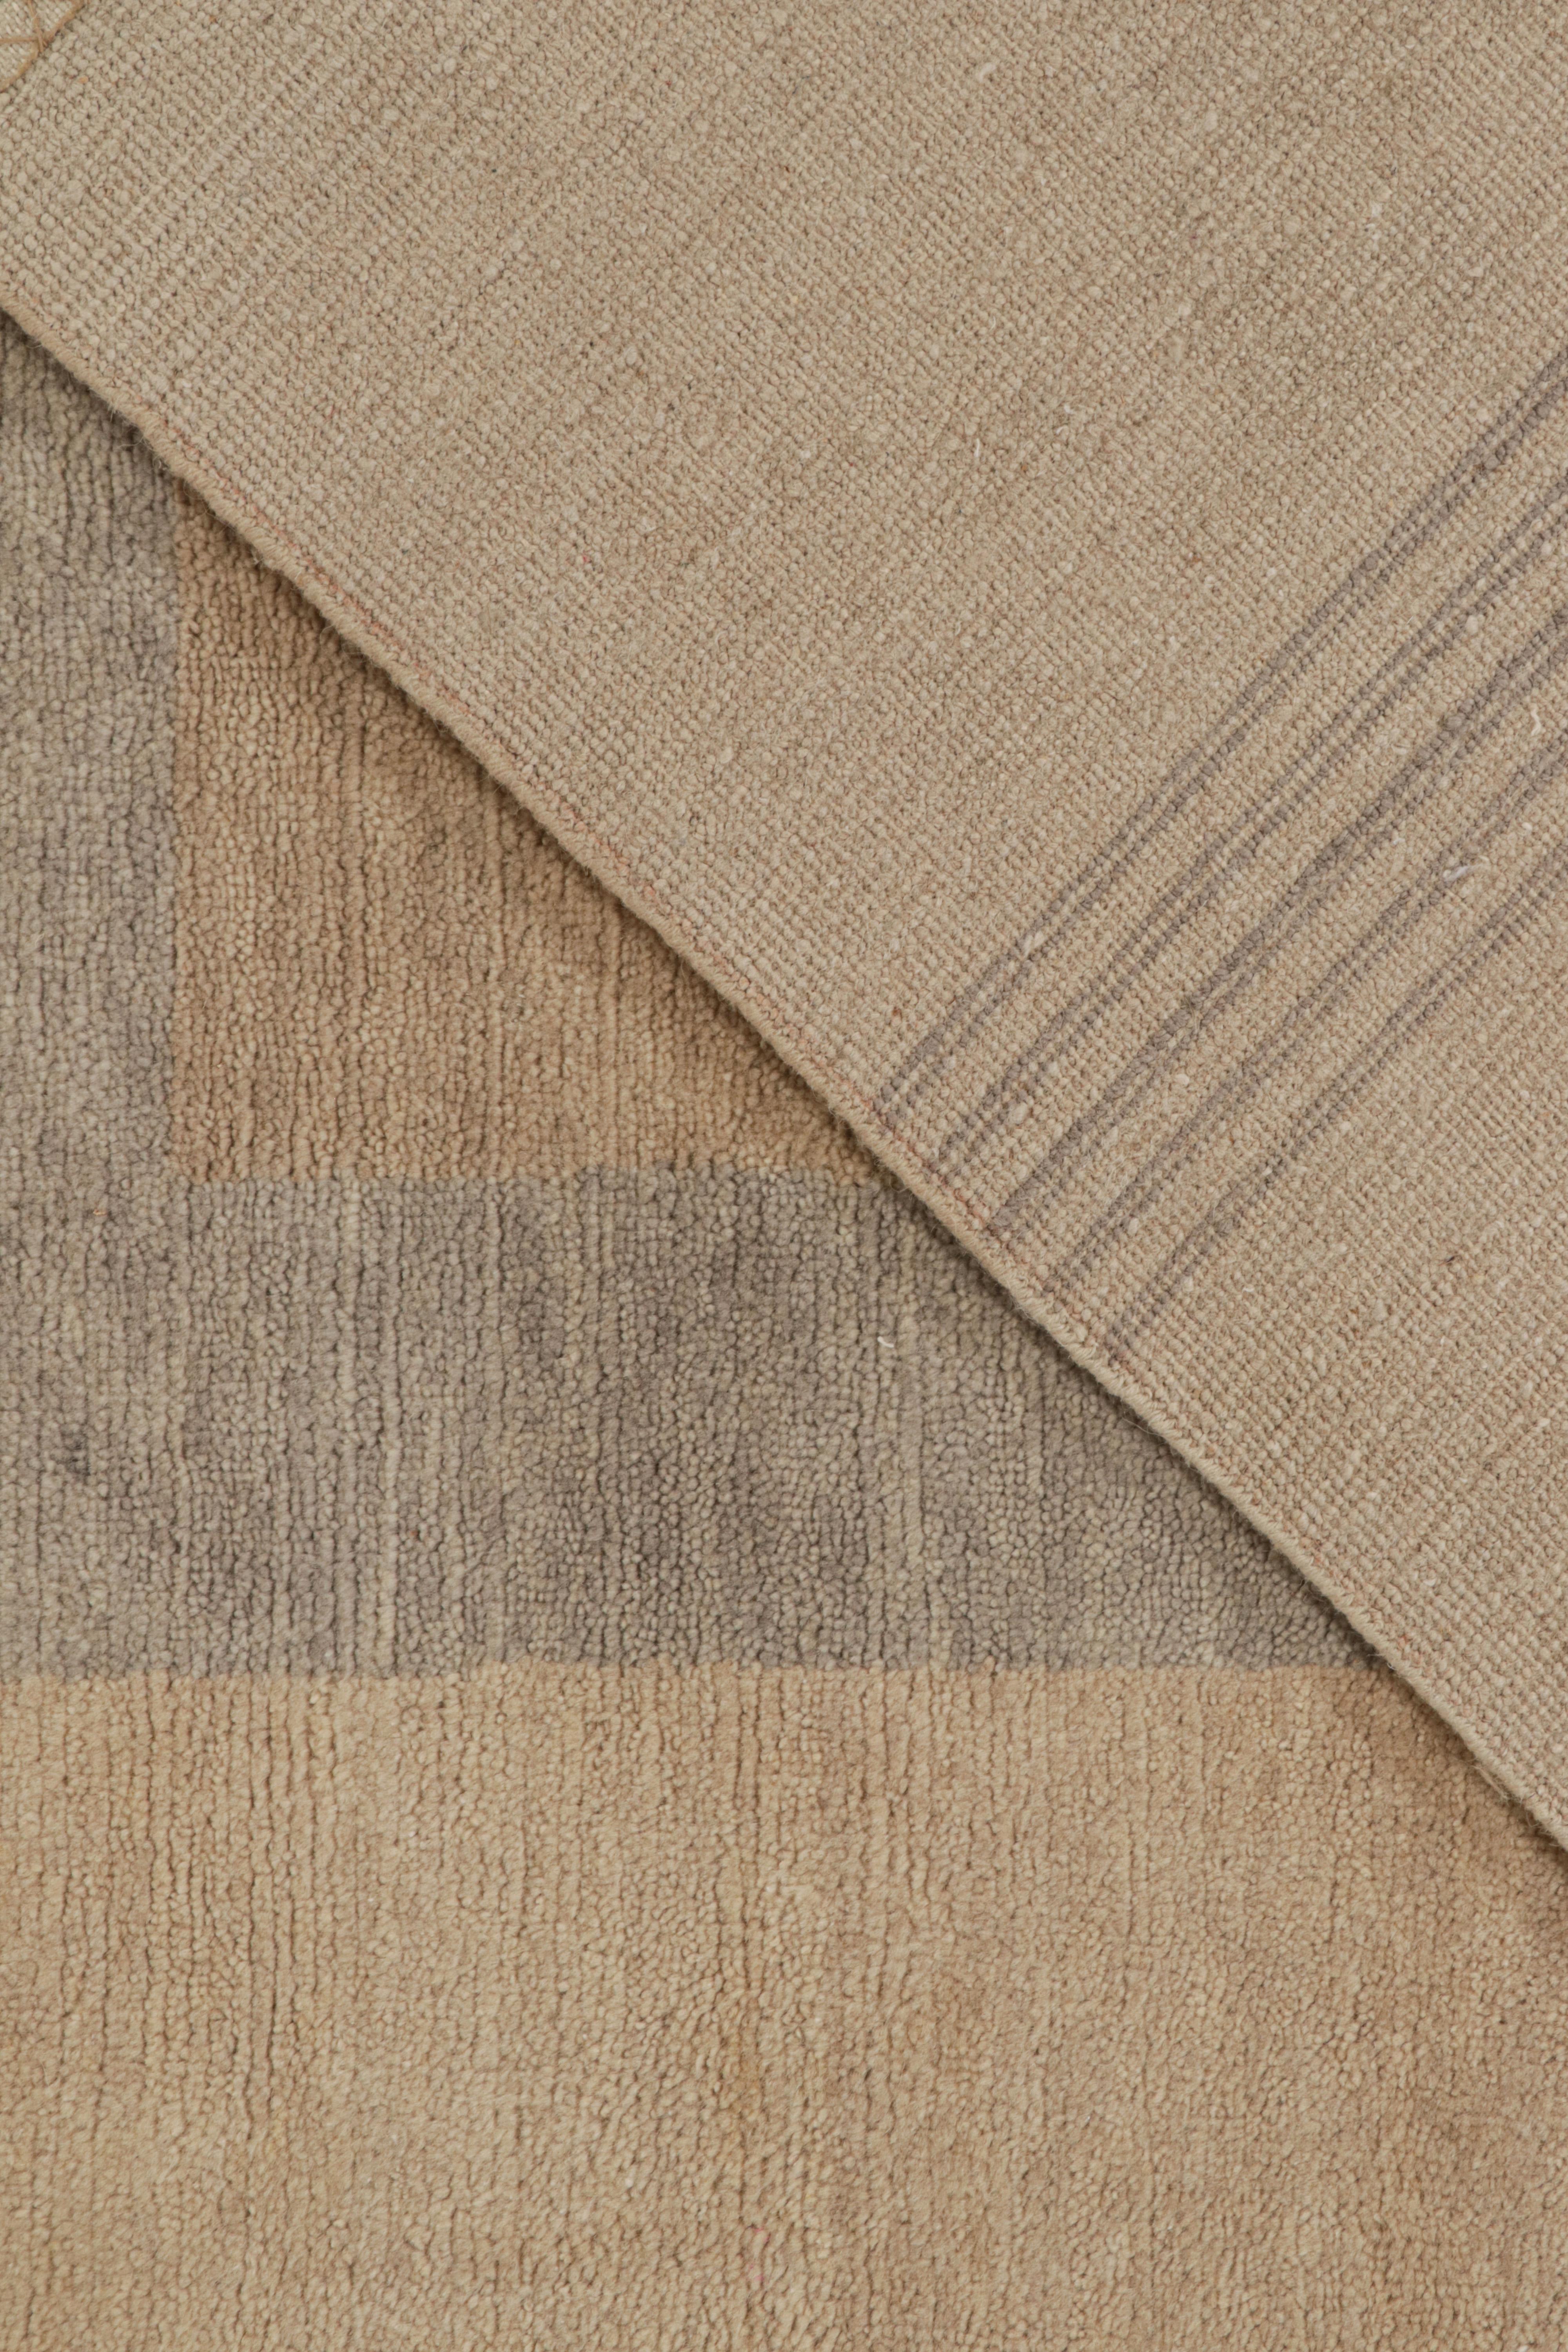 Laine Rug & Kilim's French Art Deco Rug in Beige-Brown & Grey Geometric Pattern (tapis de style Art déco français à motifs géométriques beige, marron et gris) en vente